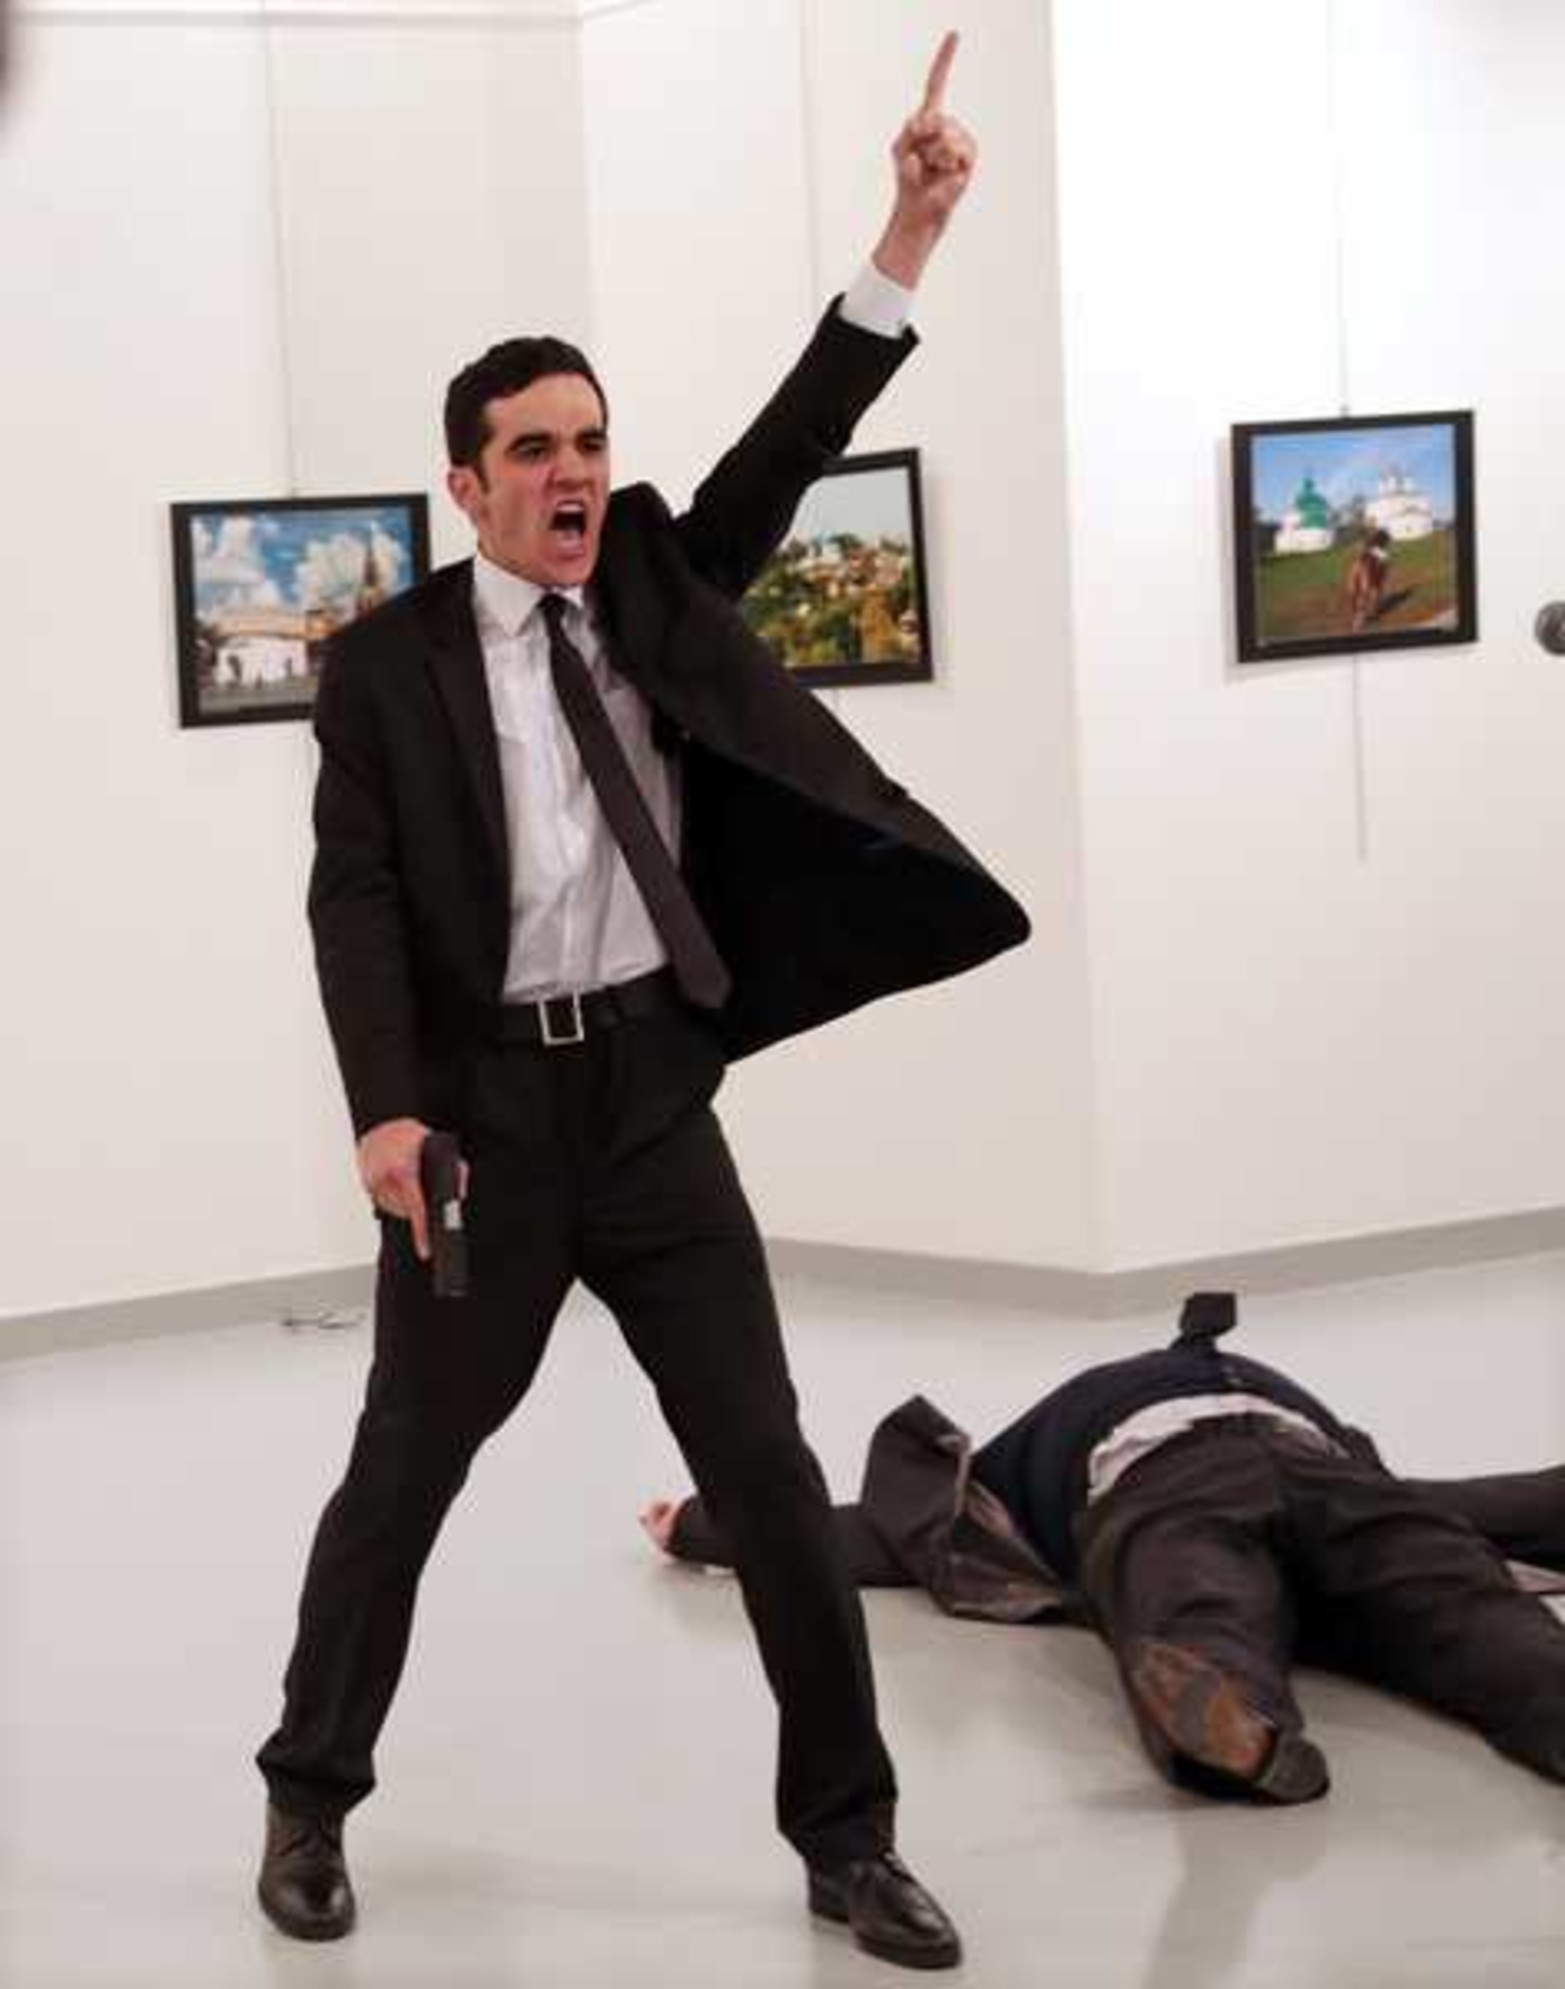 El embajador ruso en Turquía Andrei Karlov es asesinado en una galería de Arte de Ankara, Turquía, el 19/12/2016. La fotografía tomada por Burhan Ozbilici para AP fue premiada como Foto del Año en el 2017 World Press Photo.